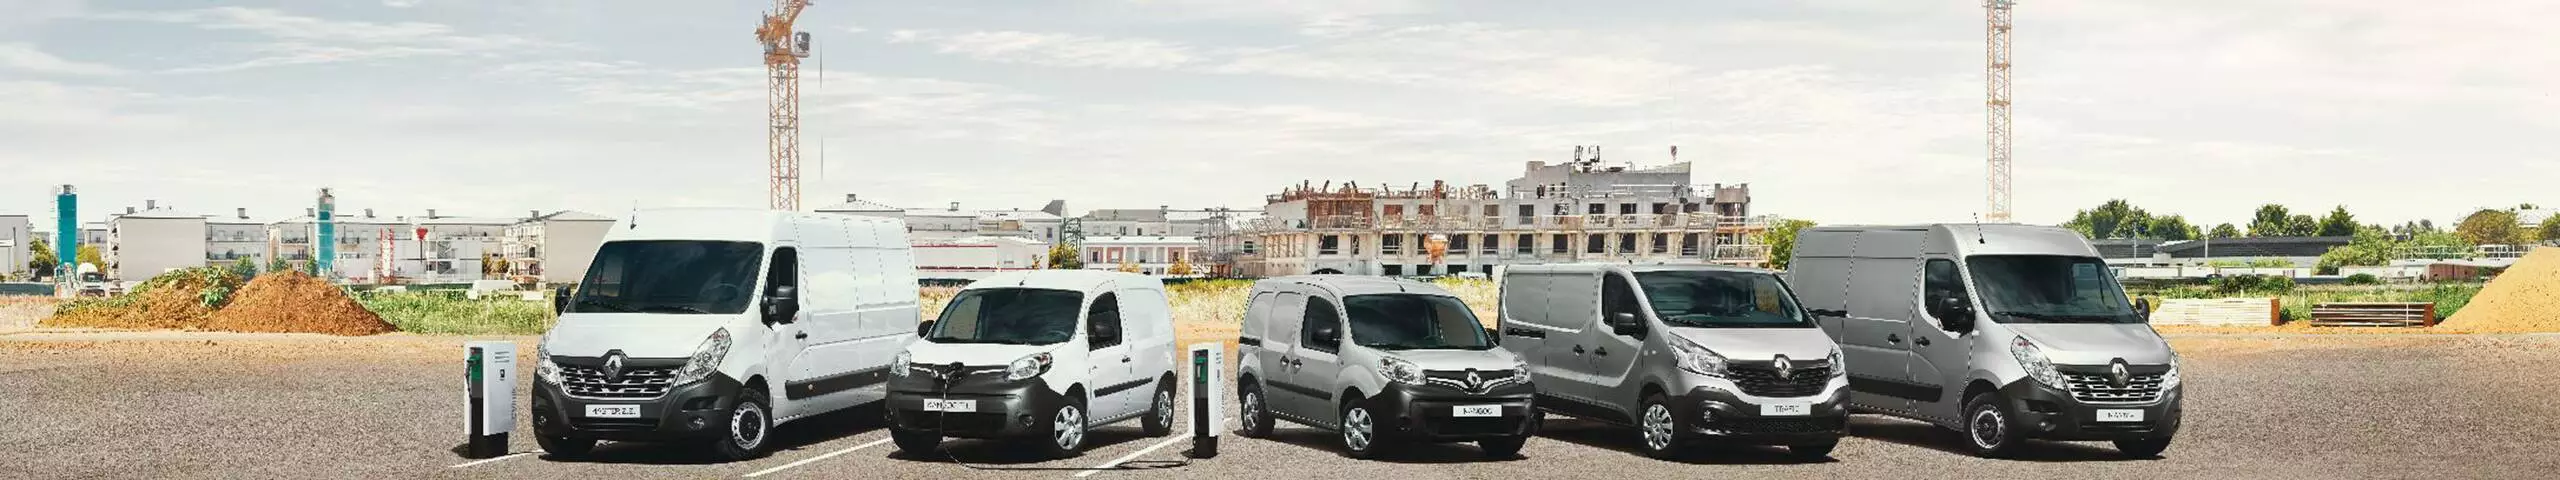 Toute la gamme des nouveaux VL de Renault